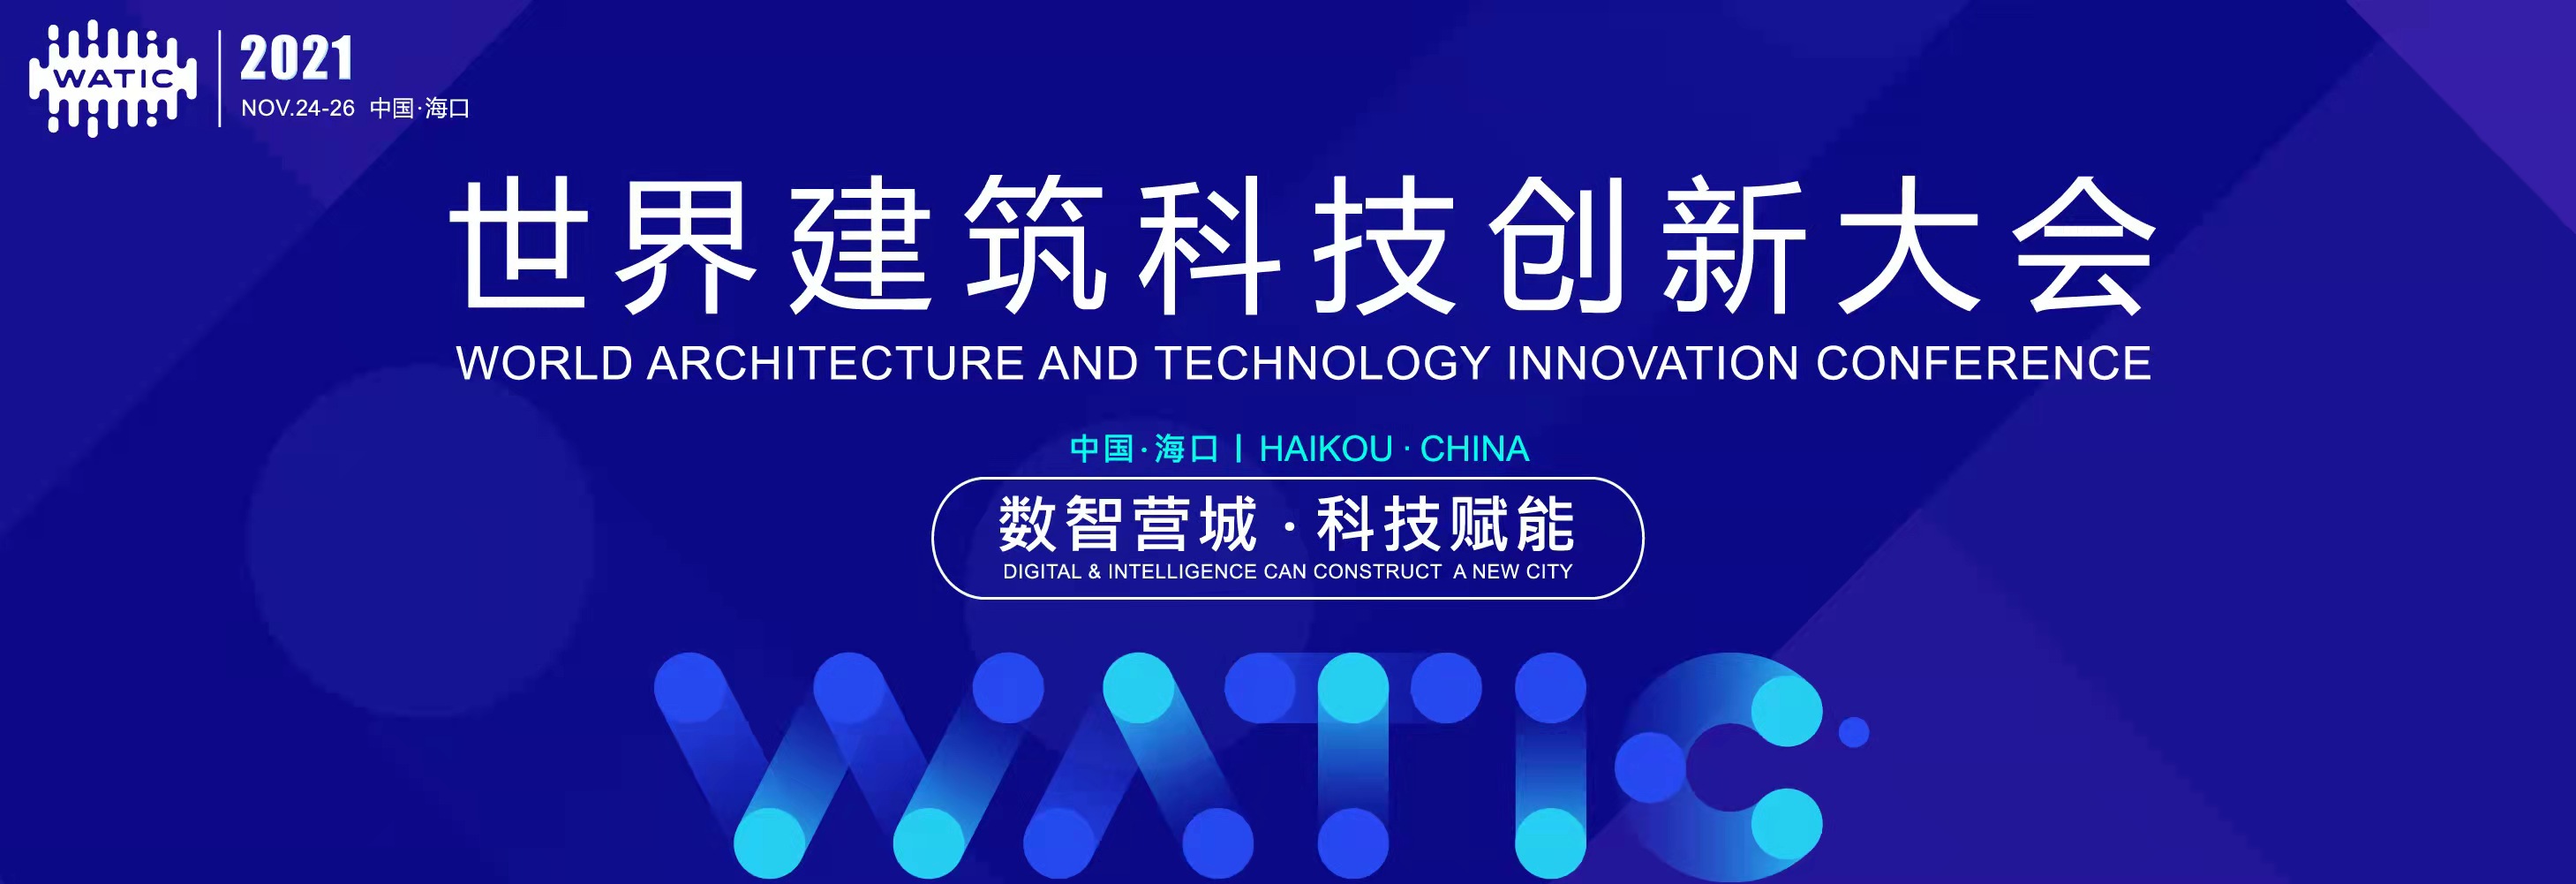 世界建筑科技创新大会11月24日海南举行 构建“数智营城·科技赋能”未来城市发展新未来